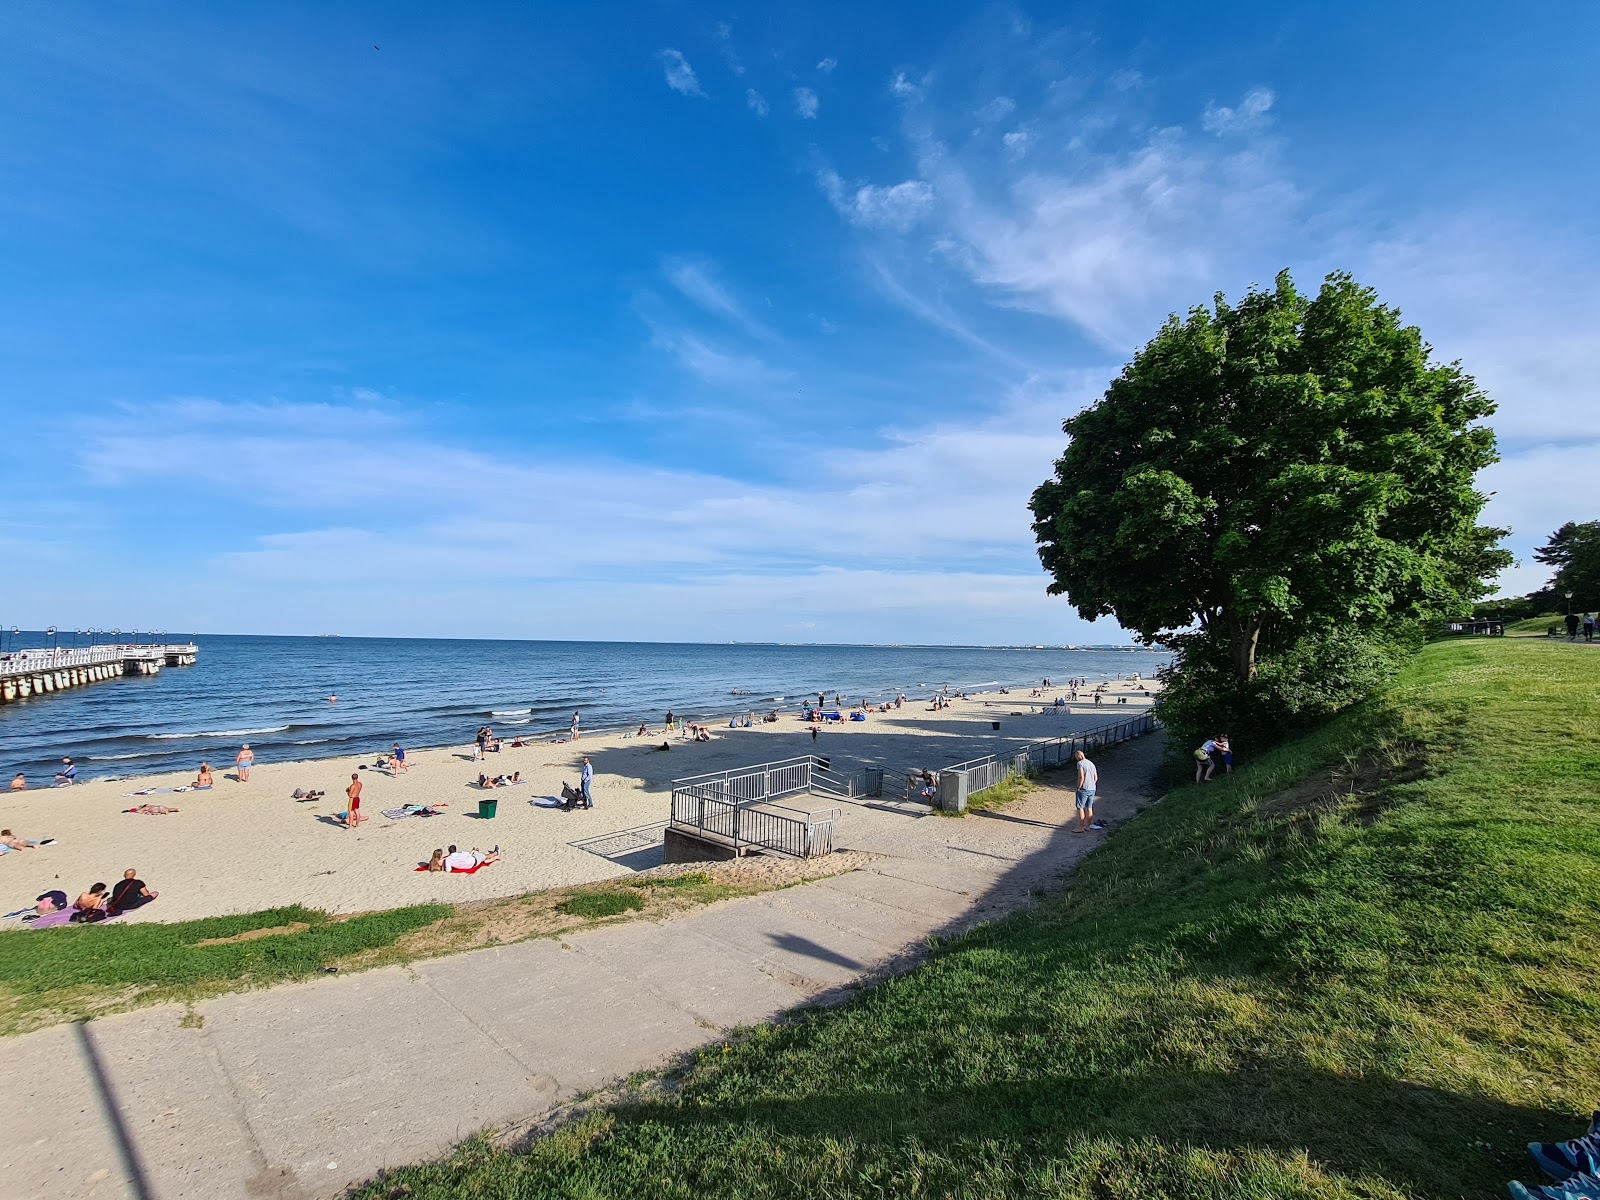 Gdynia-Orlow beach'in fotoğrafı geniş plaj ile birlikte